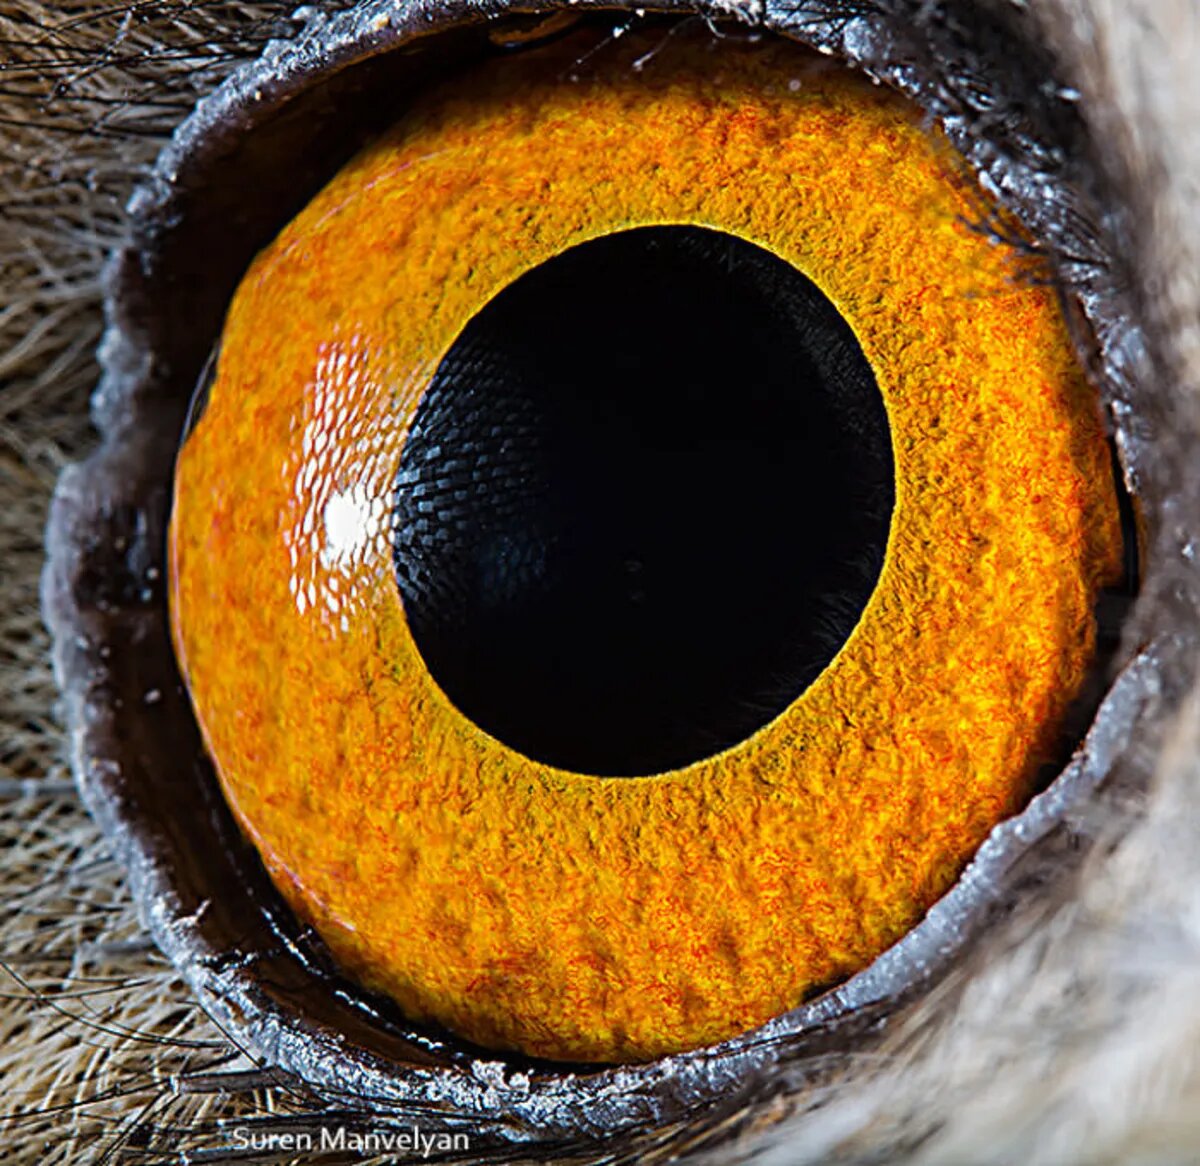 کشف دنیاهای ناشناخته در چشم حیوانات/ عکس